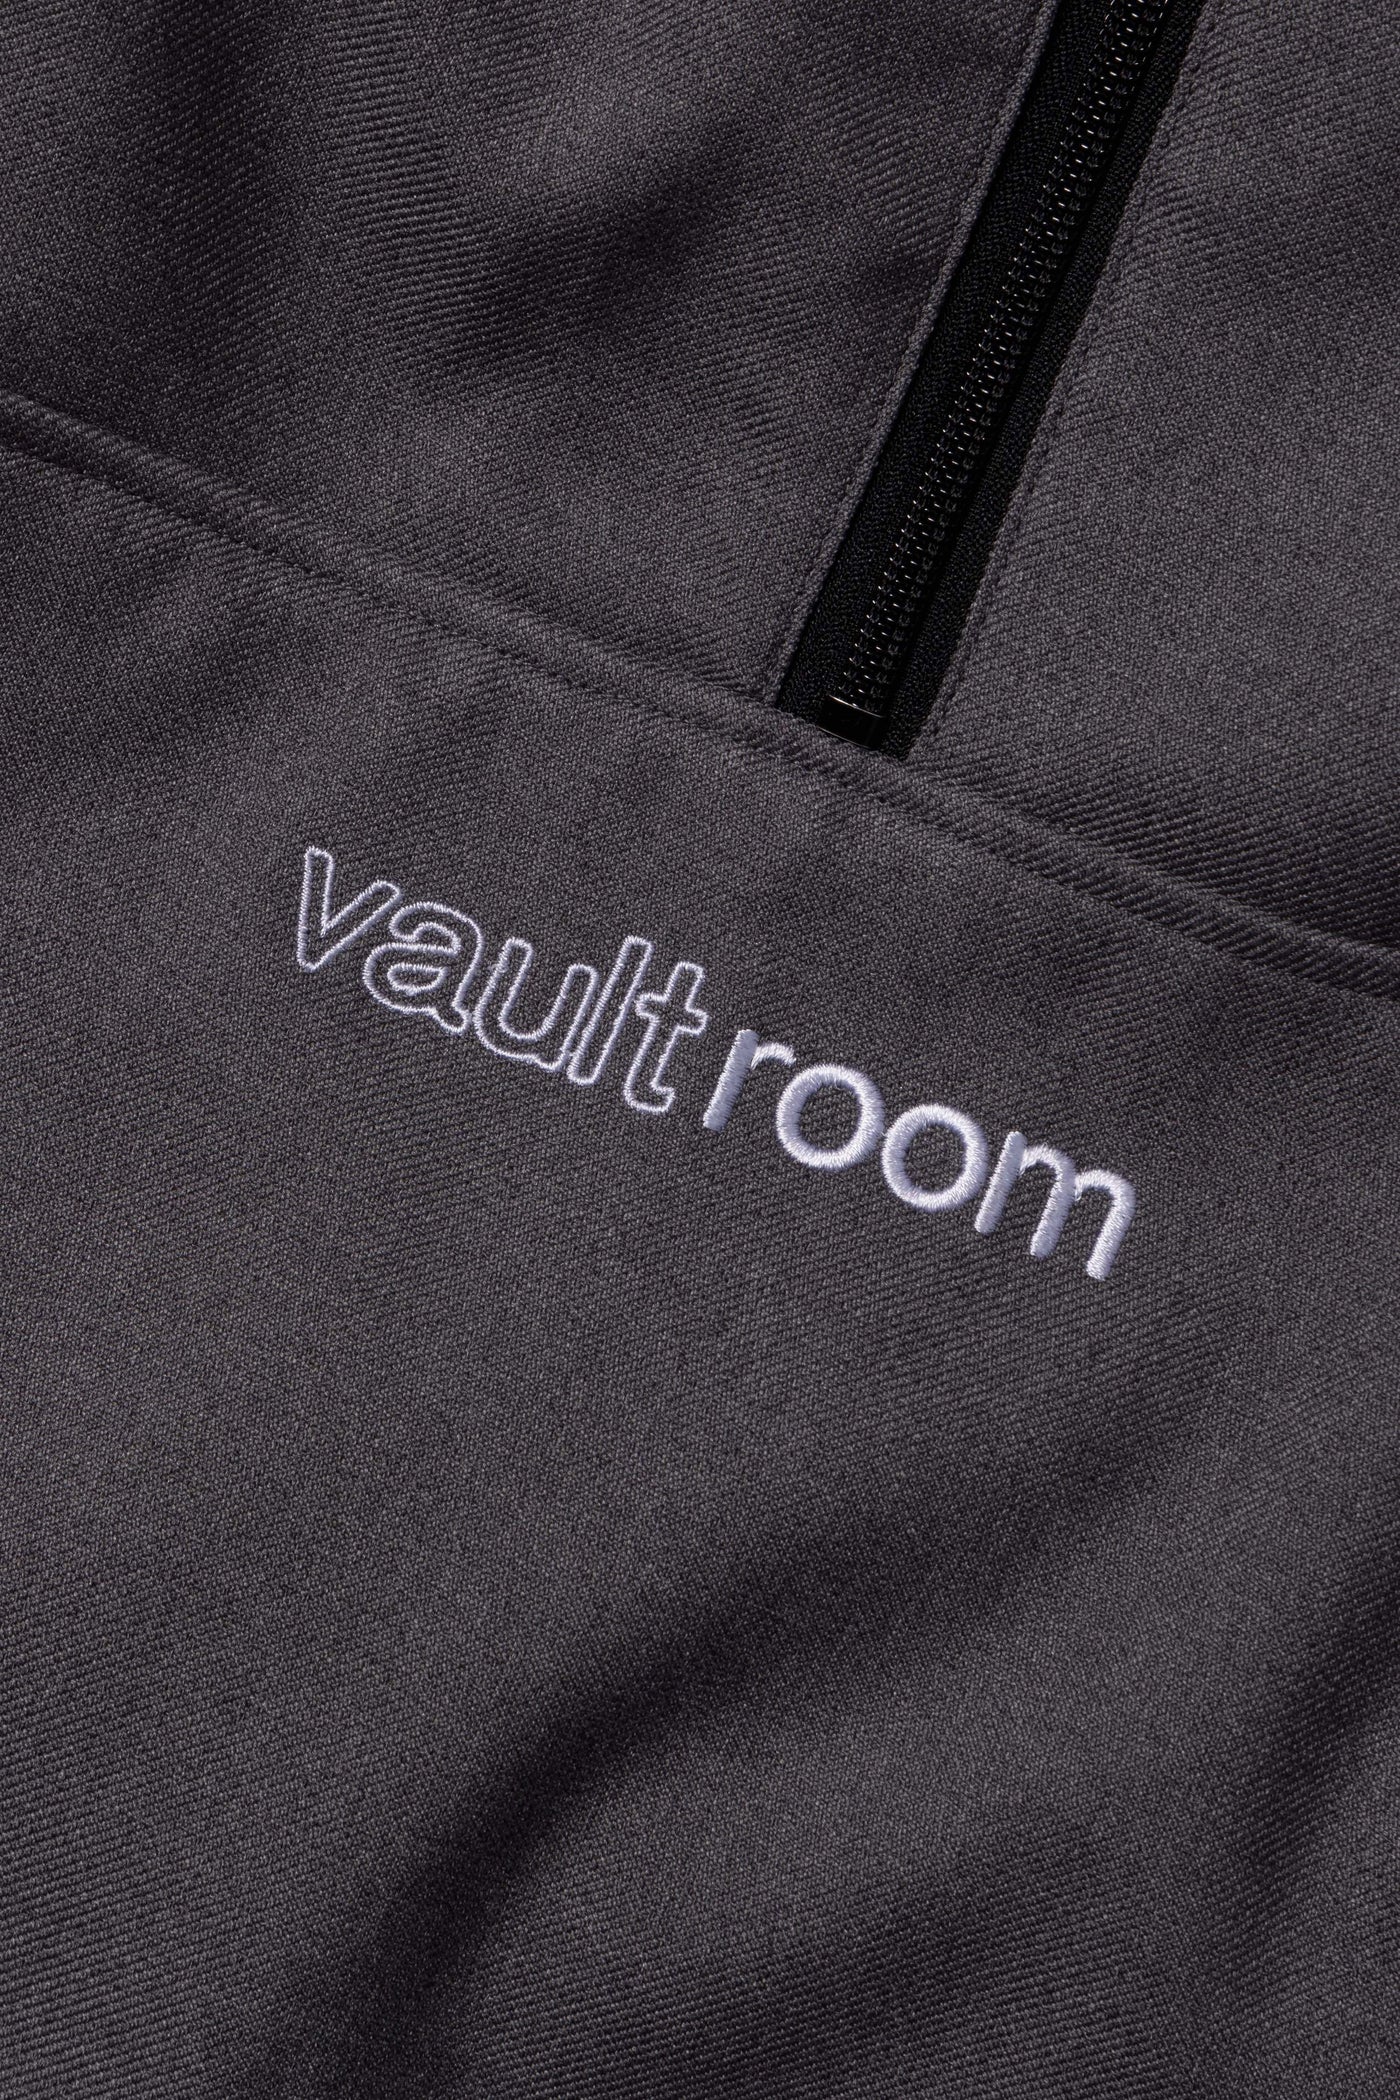 Vaultroom VR × FNATIC SET UP